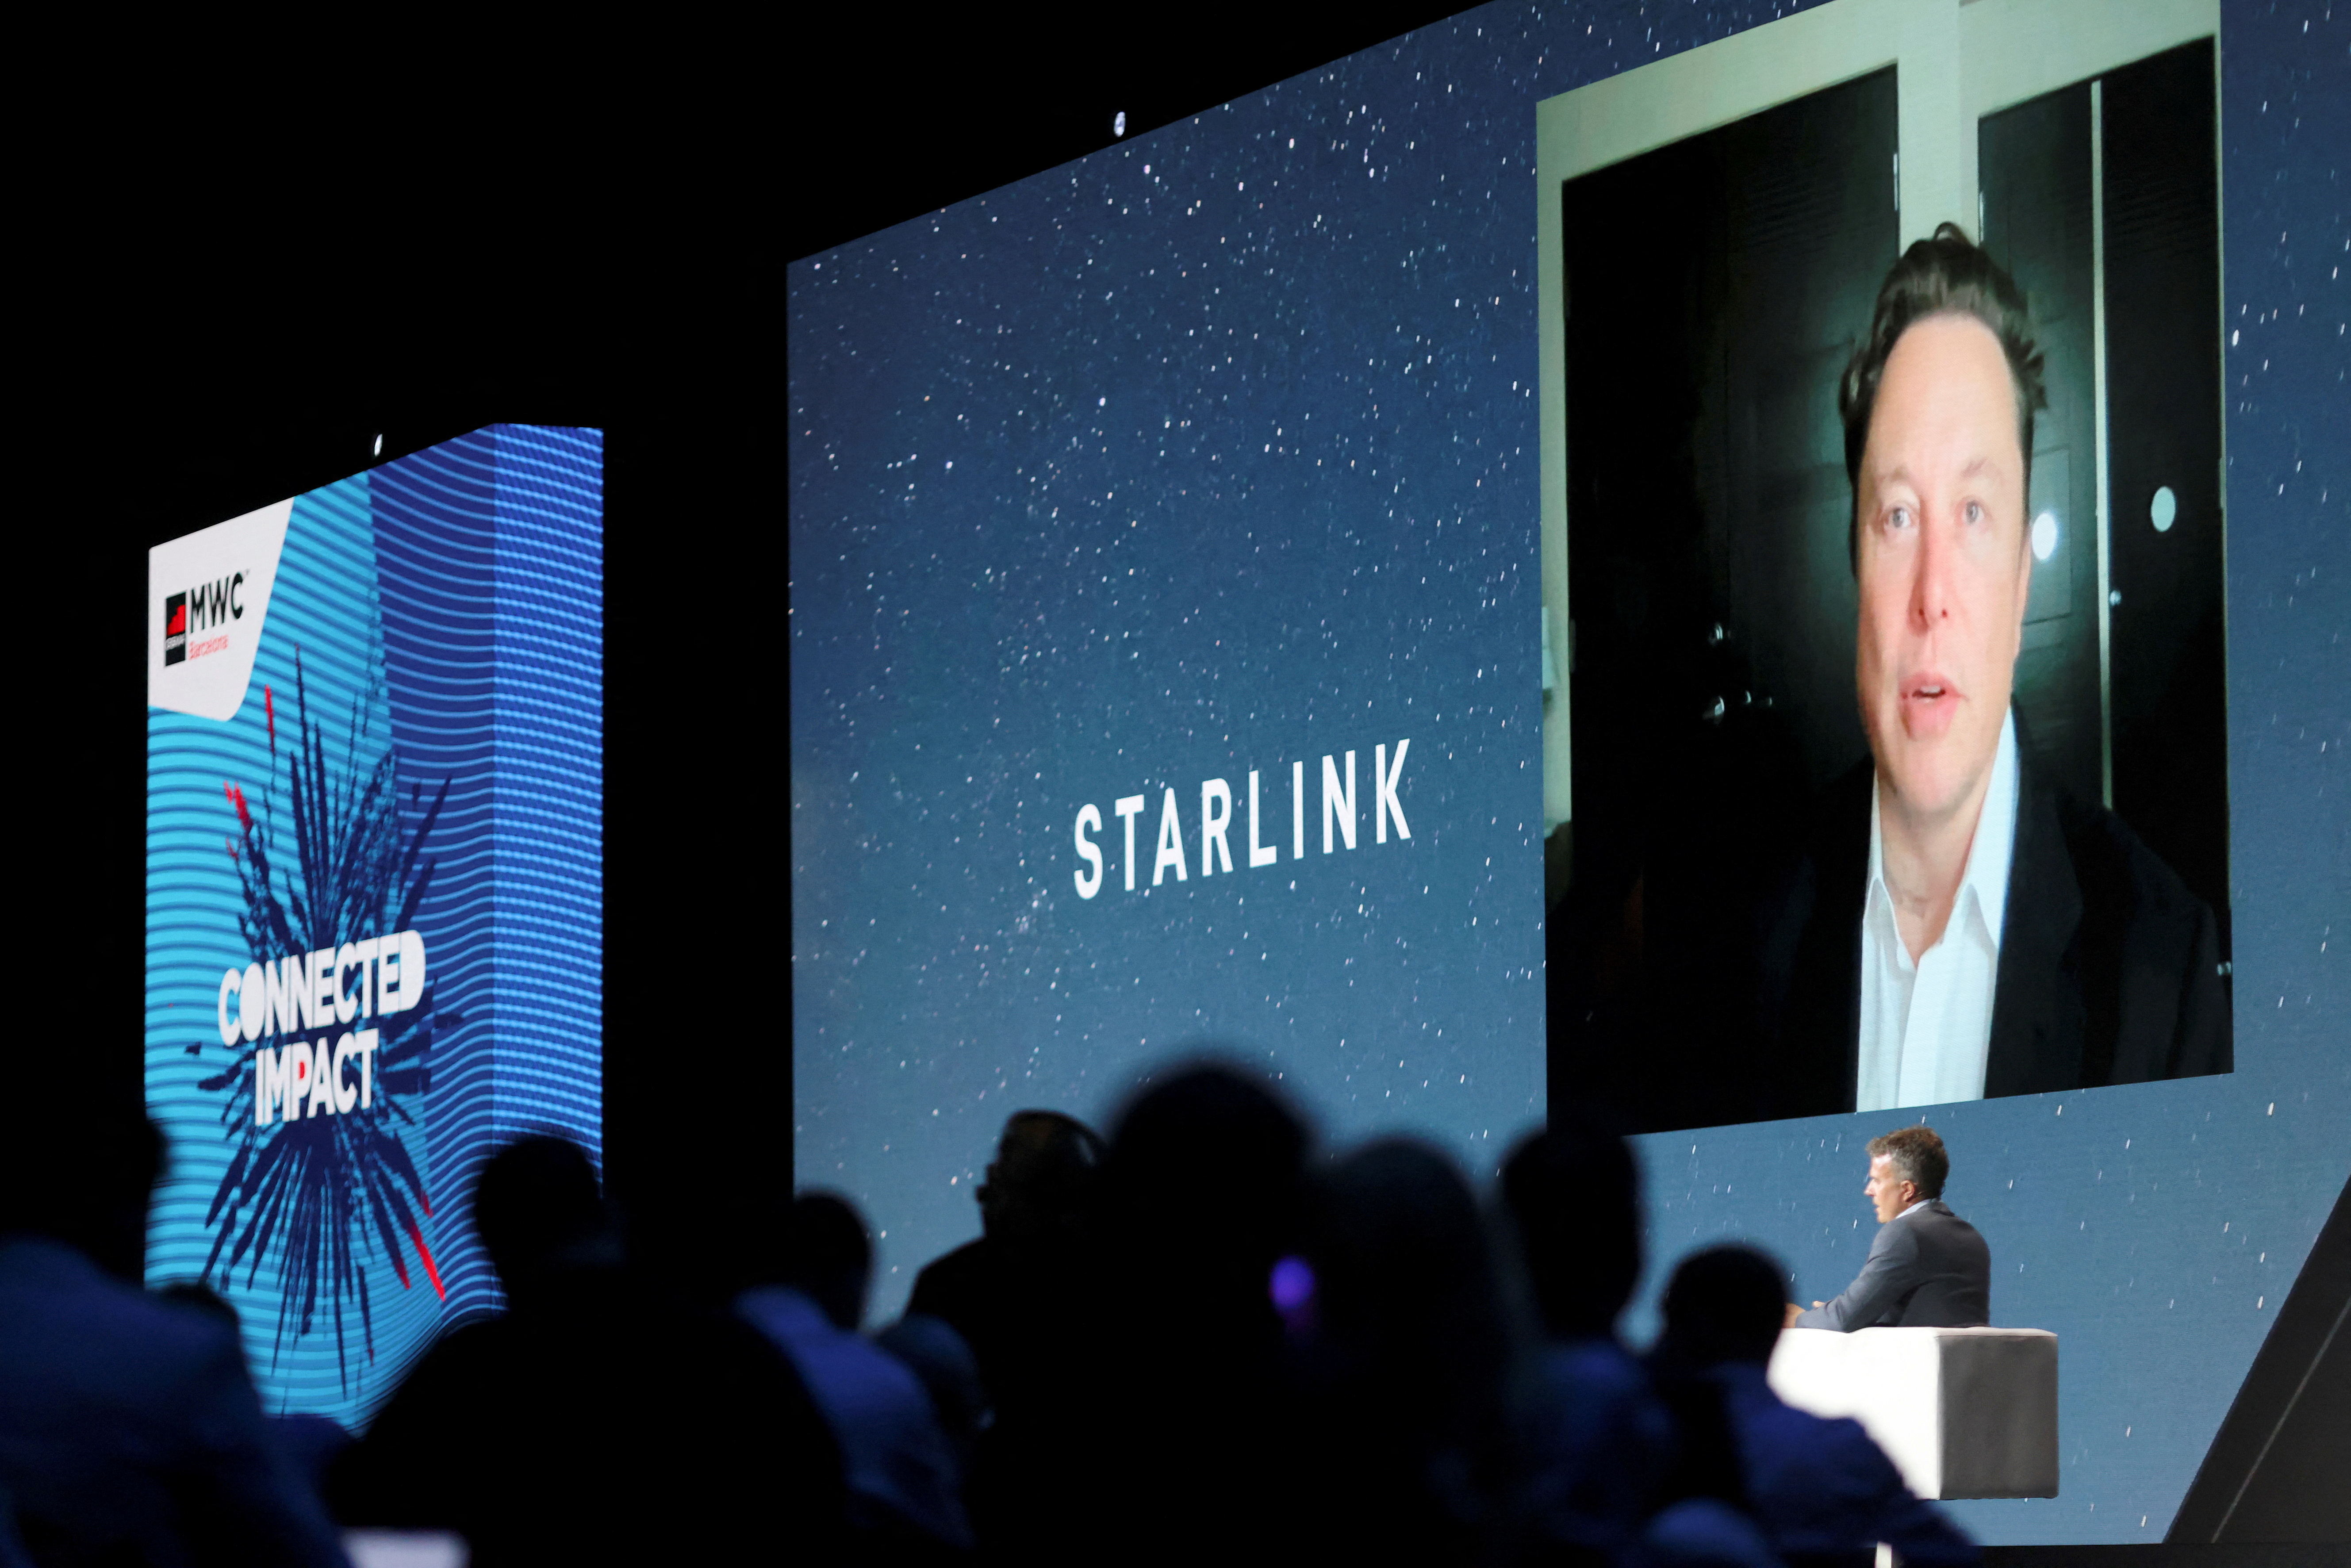 FOTO DE ARCHIVO: El fundador de SpaceX y consejero delegado de Tesla, Elon Musk, habla en una pantalla durante el Mobile World Congress (MWC) en Barcelona, España, el 29 de junio de 2021. REUTERS/Nacho Doce